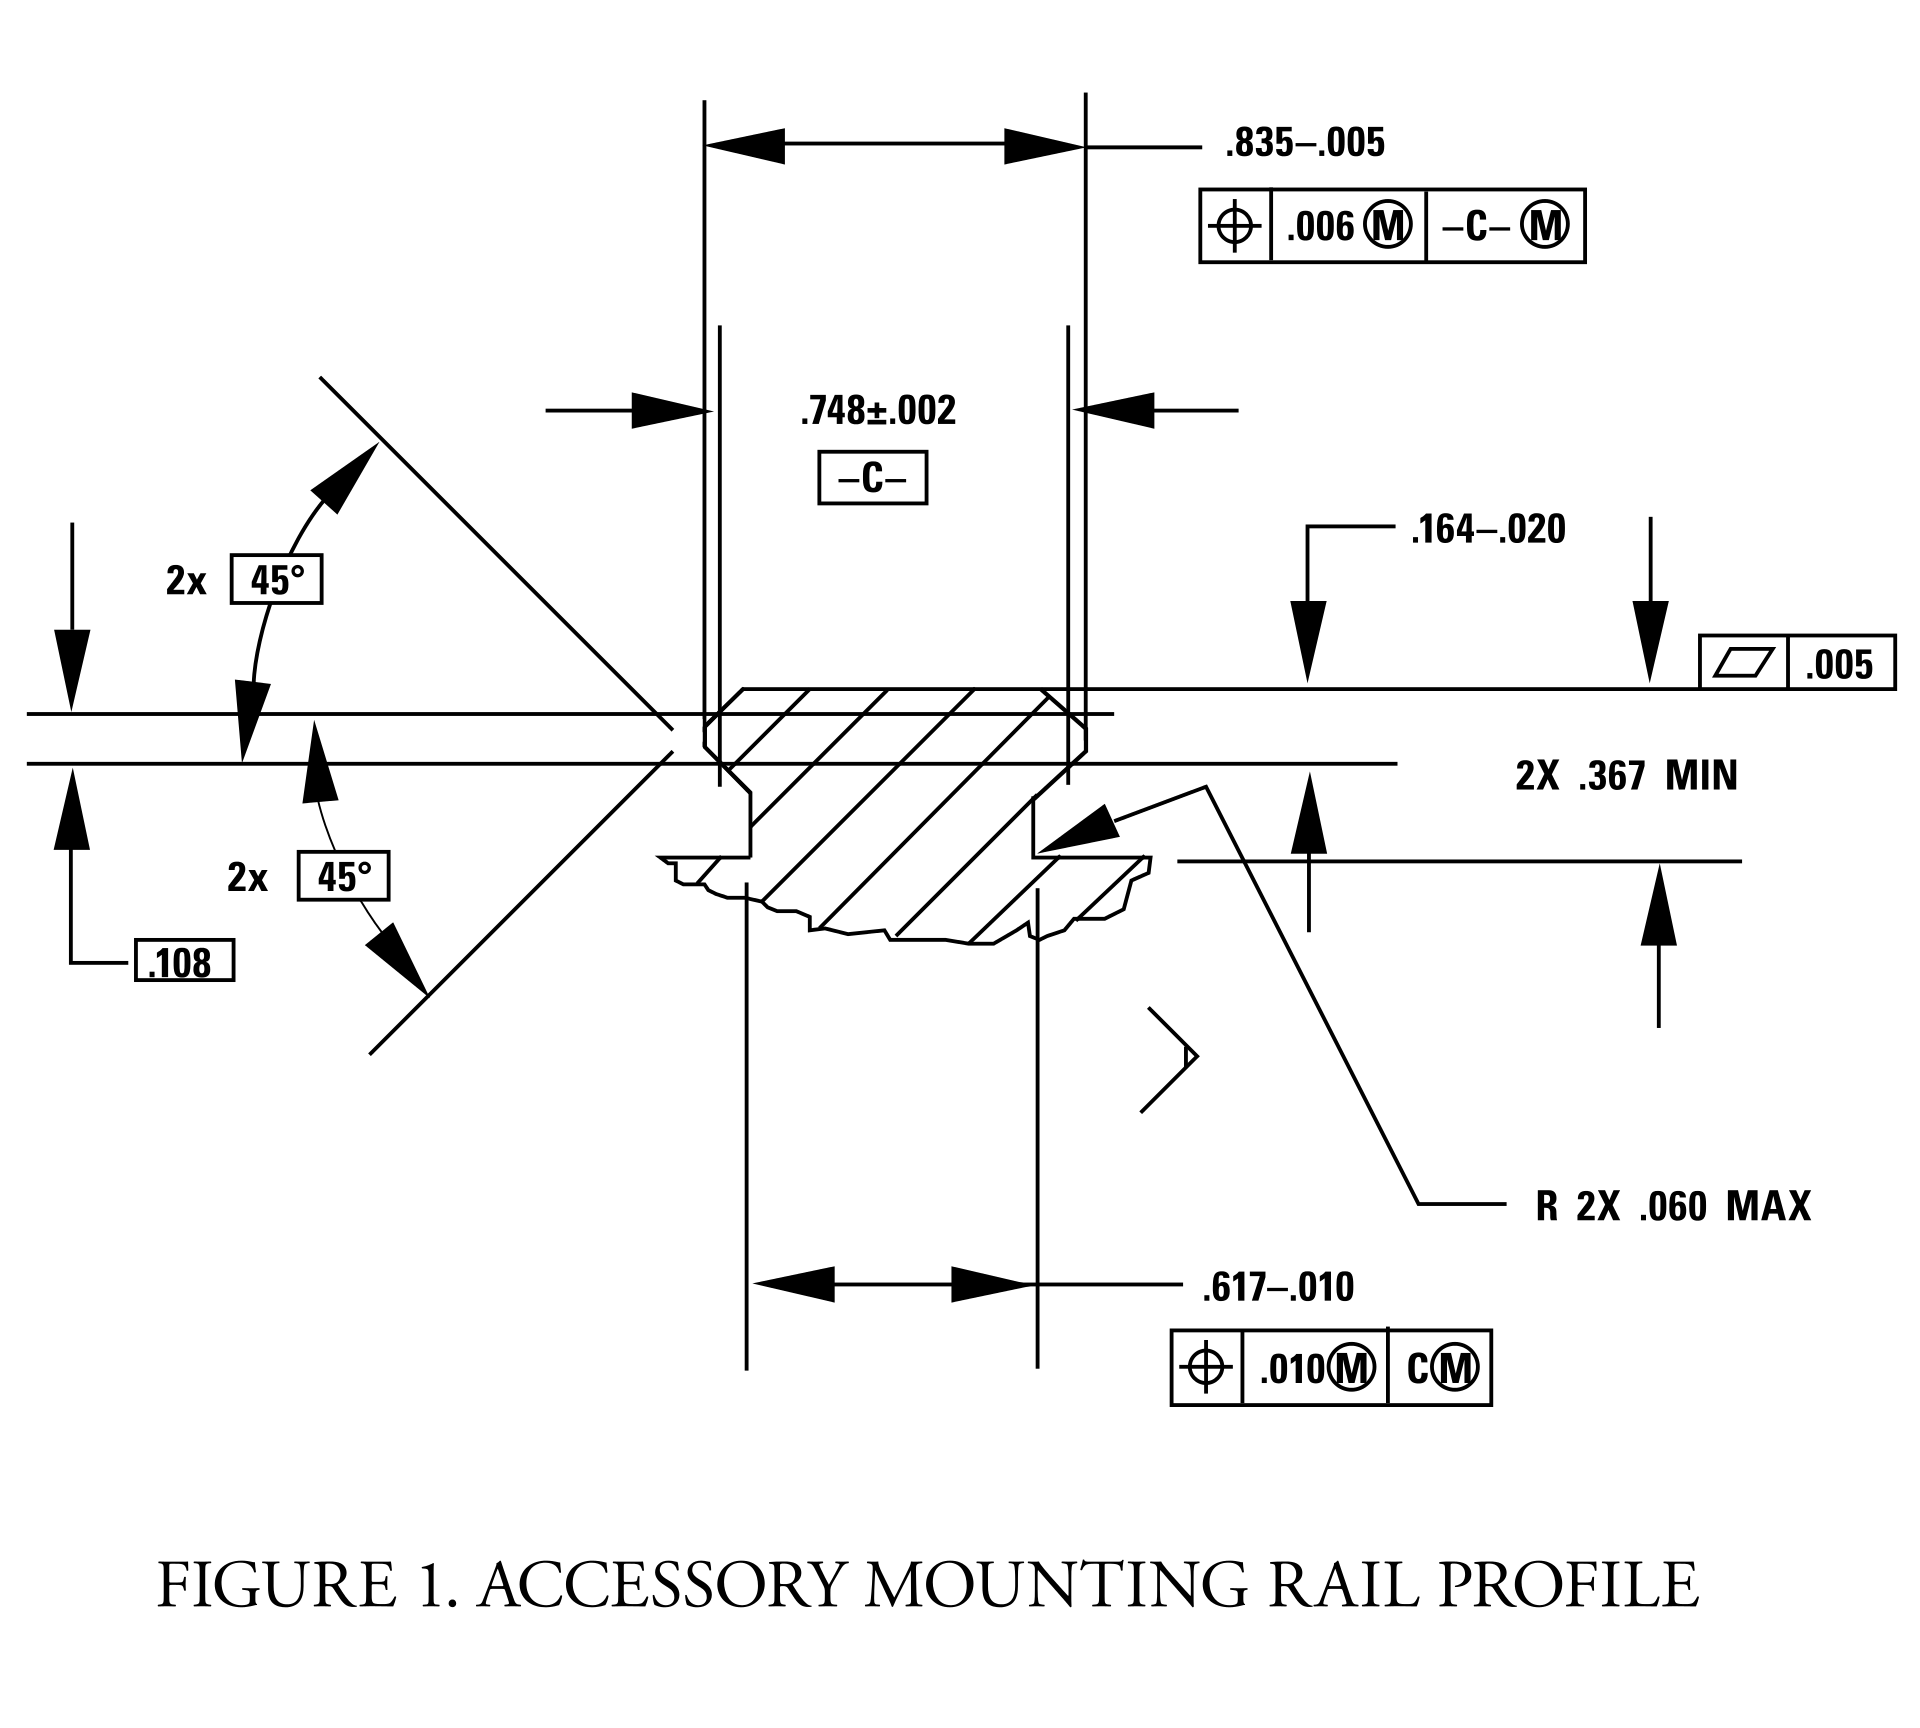 File:The Pirate Bay logo bw.svg - Wikipedia